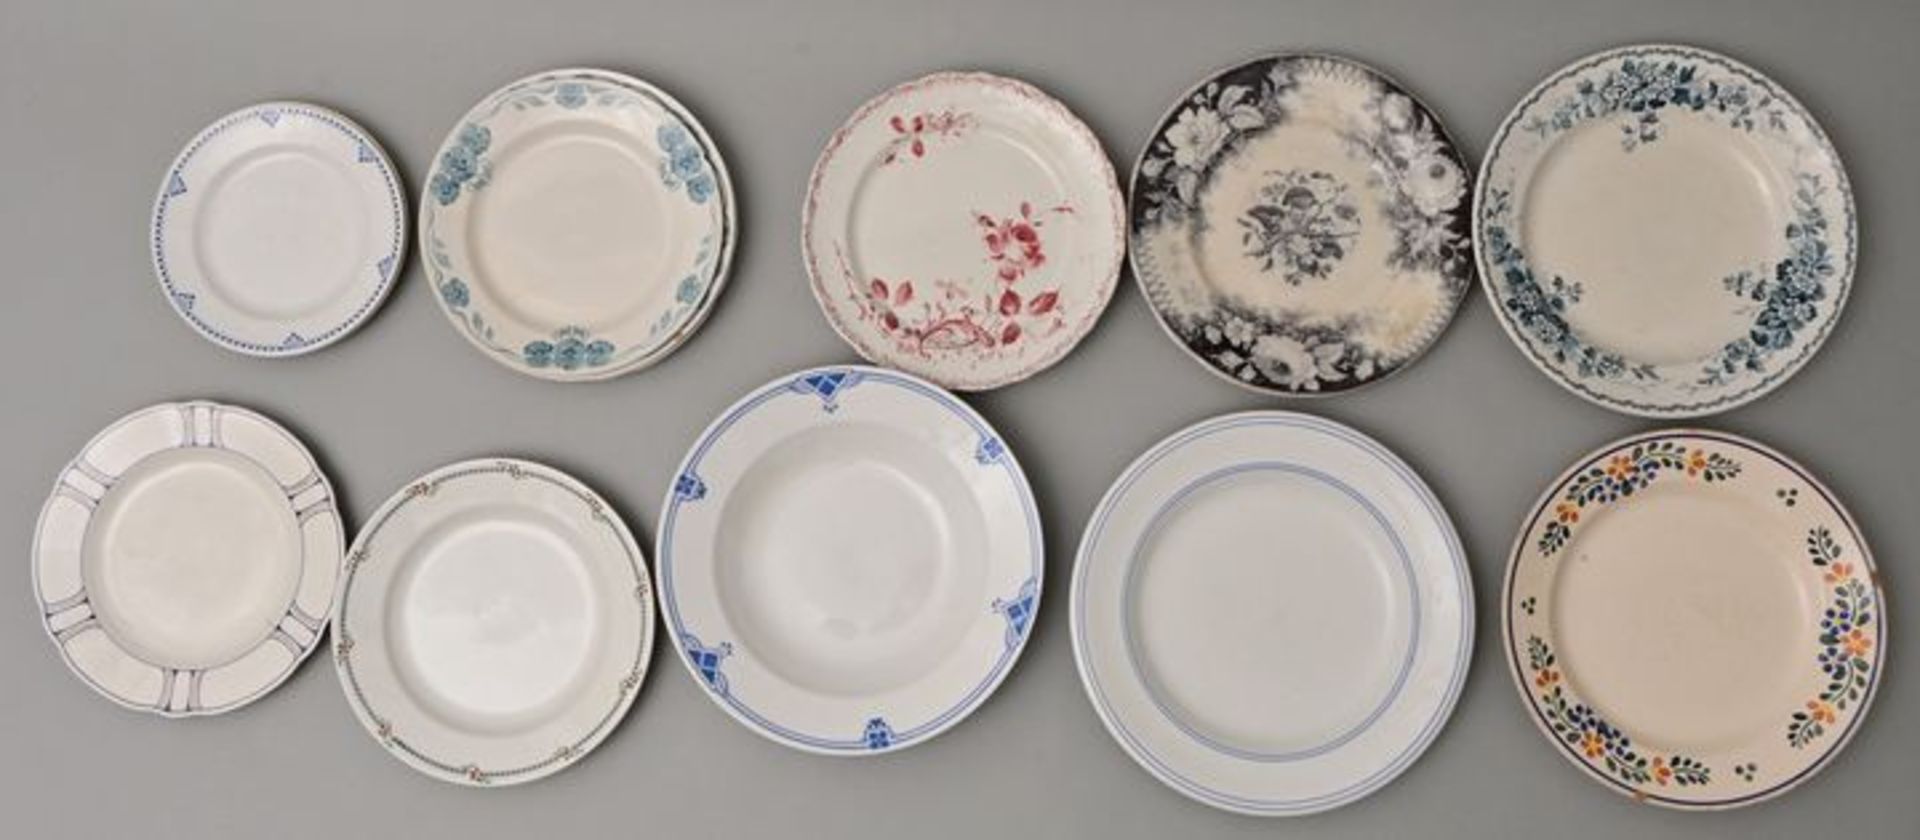 14 Teller Steingut/ 14 creamware plates